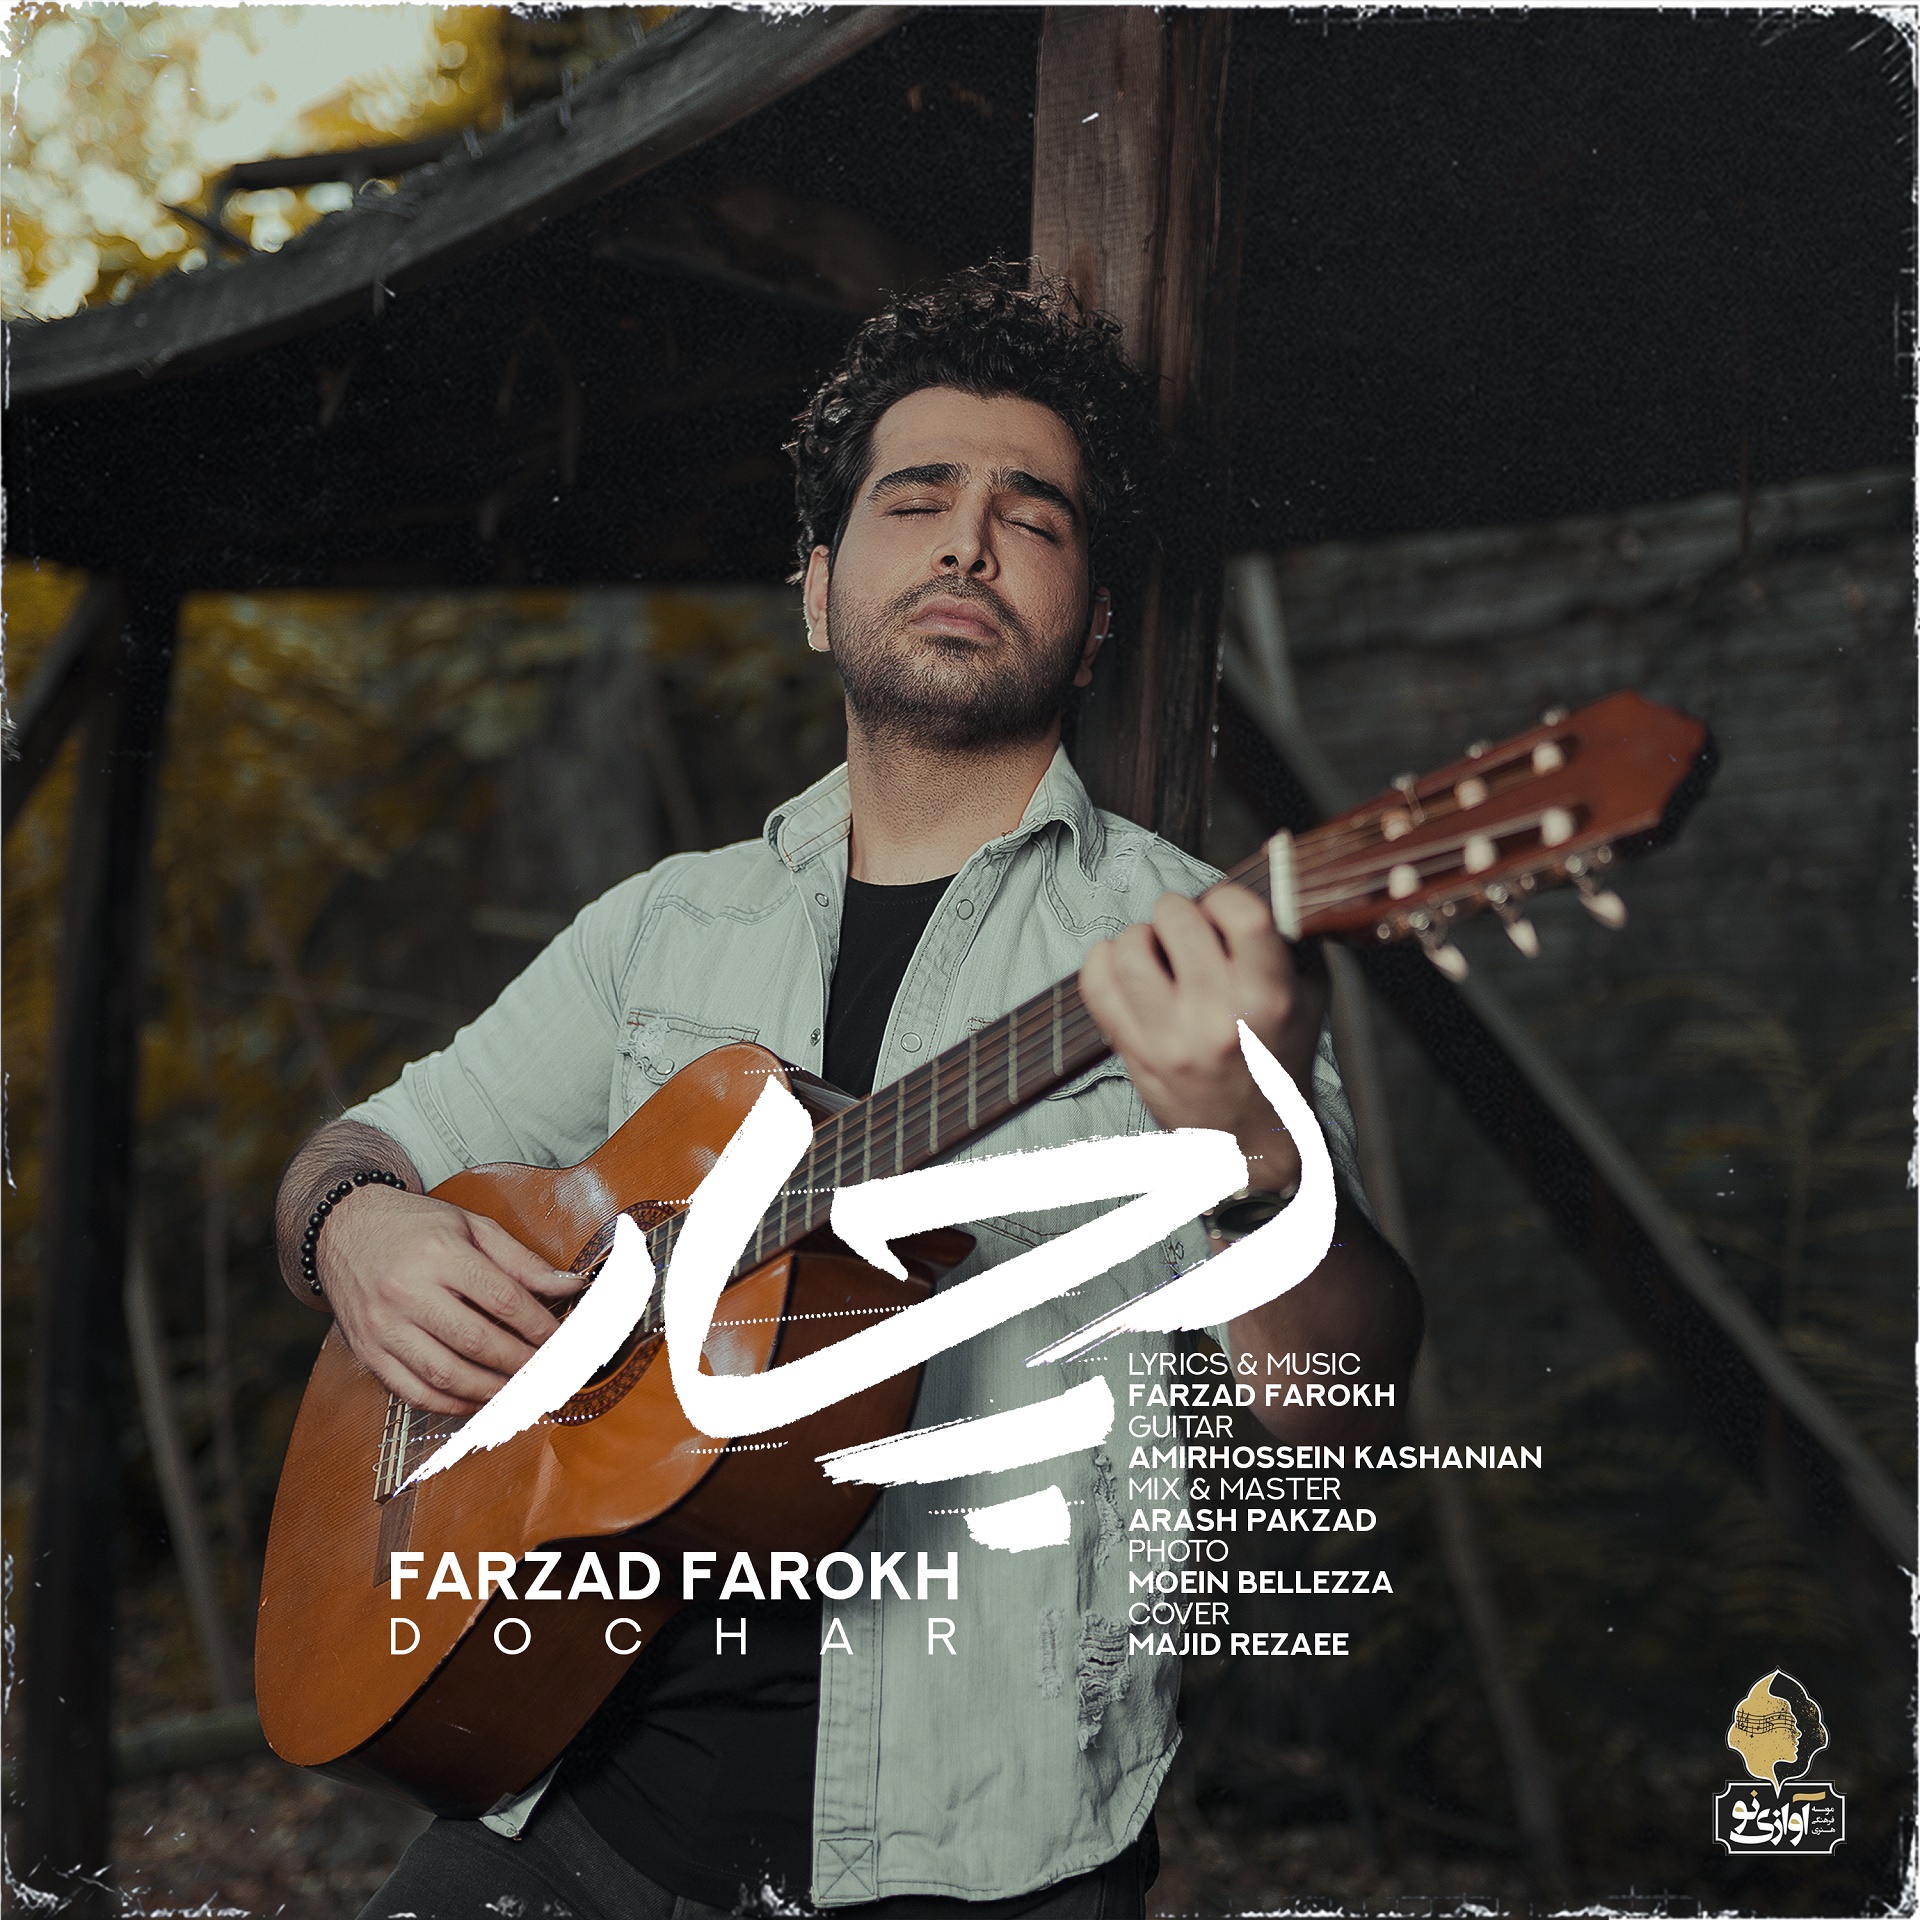  دانلود آهنگ جدید فرزاد فرخ - دچار | Download New Music By Farzad Farokh - Dochar